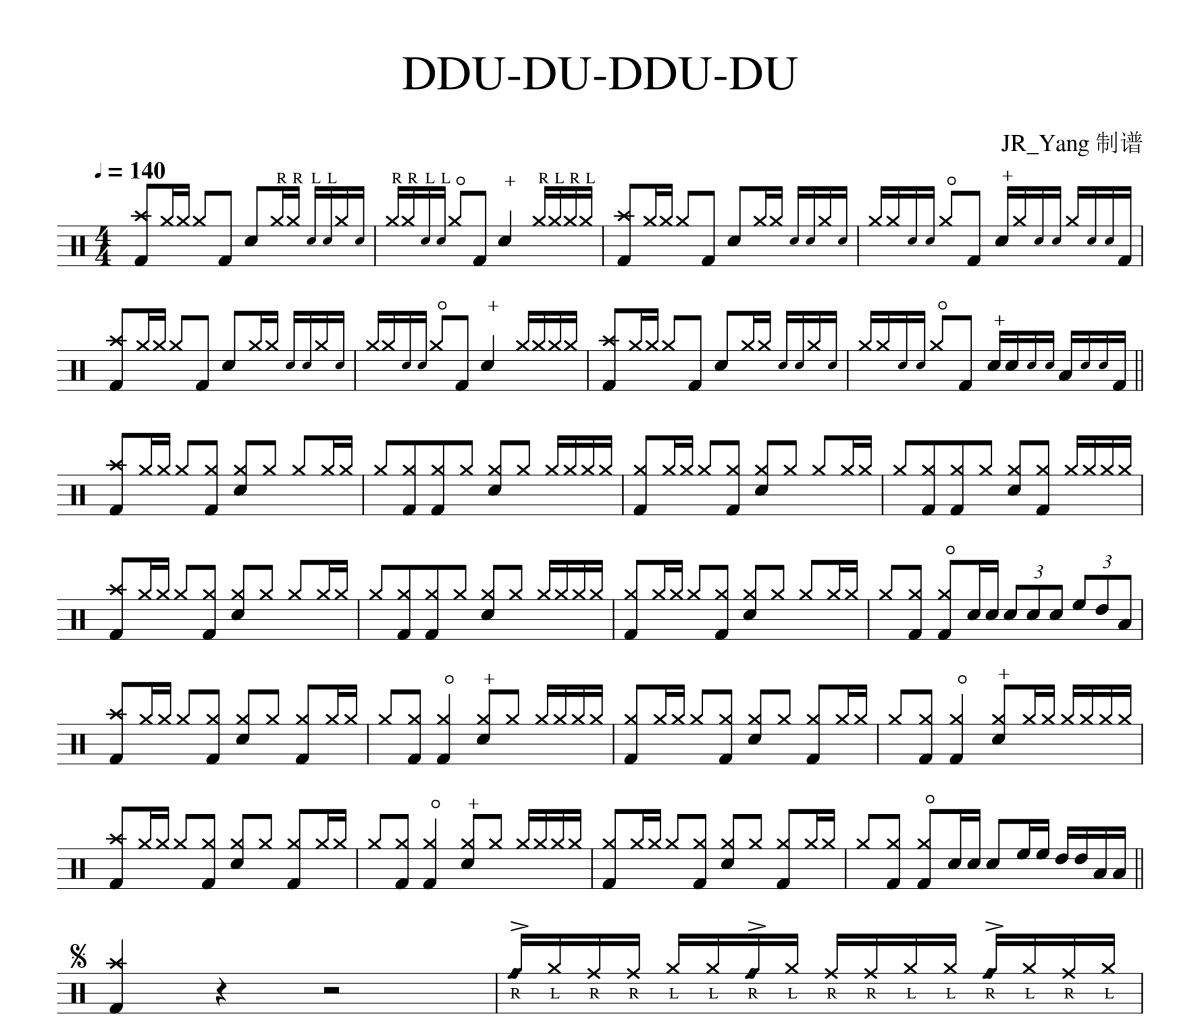 DDU-DU-DDU-DU鼓谱 BLACKPINK《DDU-DU-DDU-DU》架子鼓鼓谱